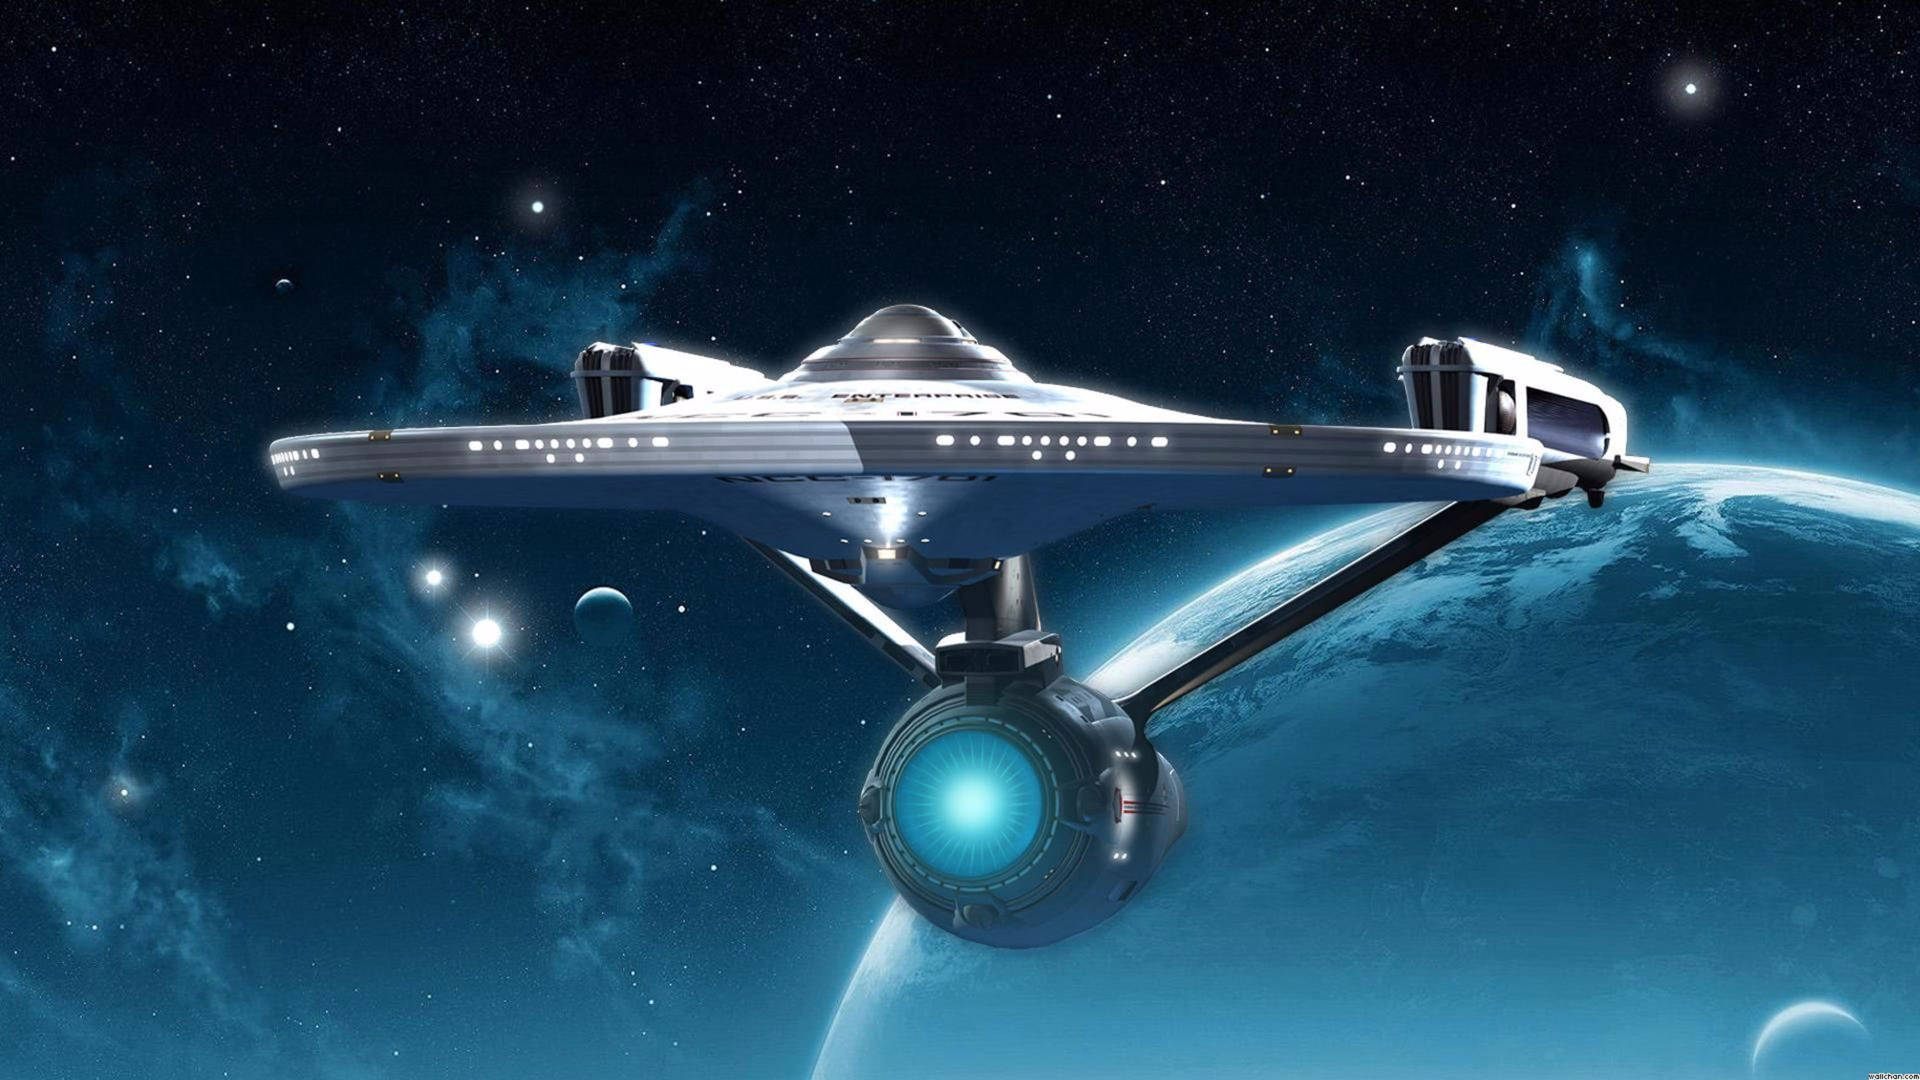 Spaceship Of Star Trek